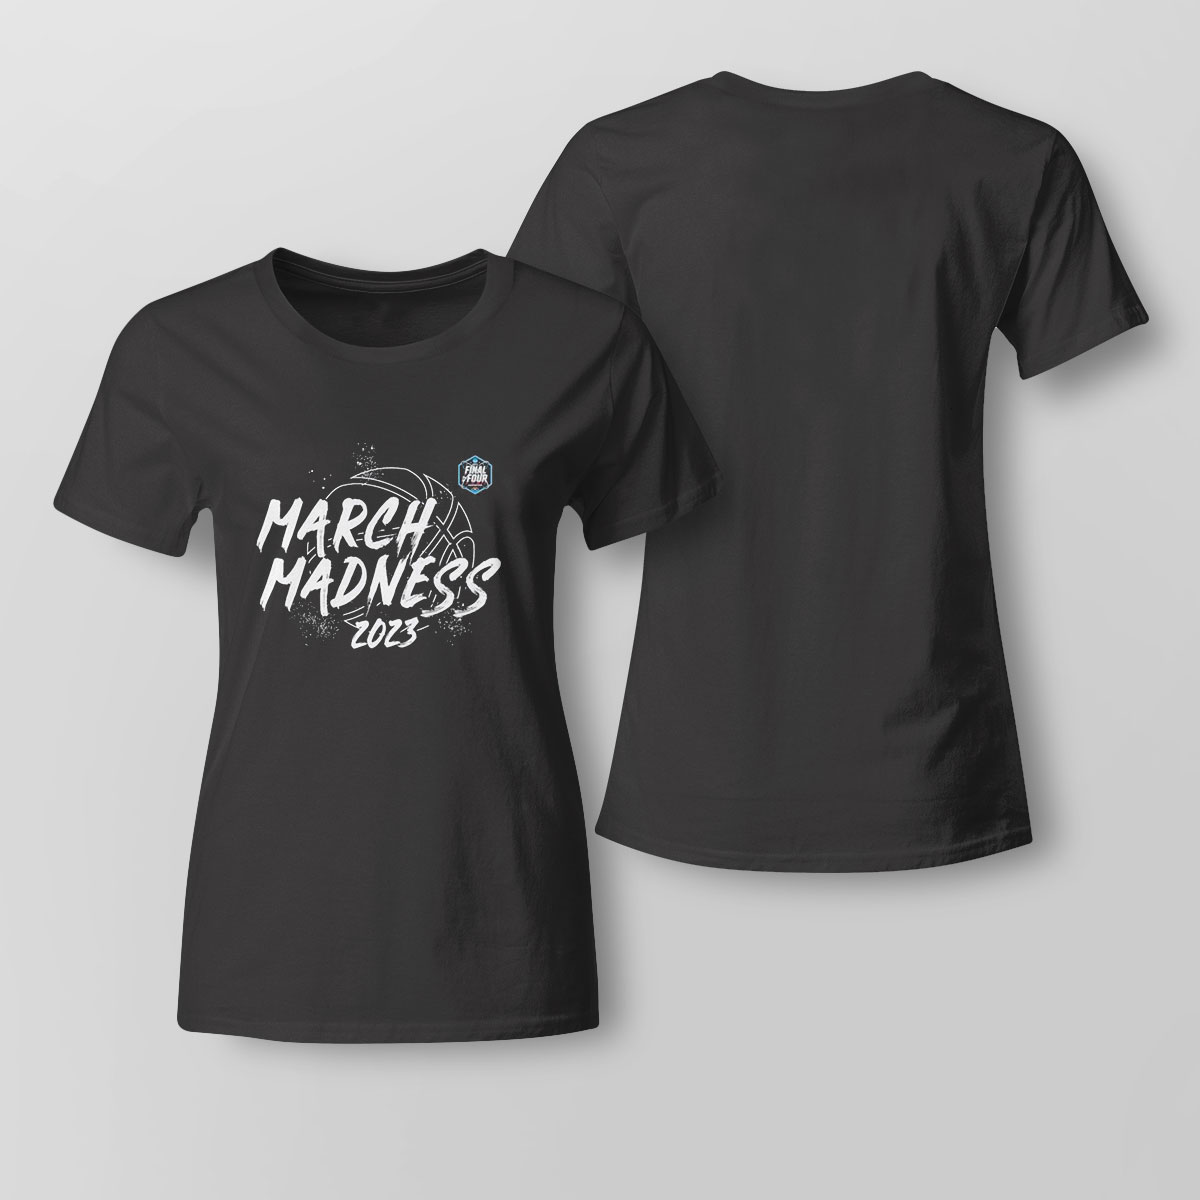 2023 Ncaa Mens Basketball Tournament March Madness Bracket T-shirt